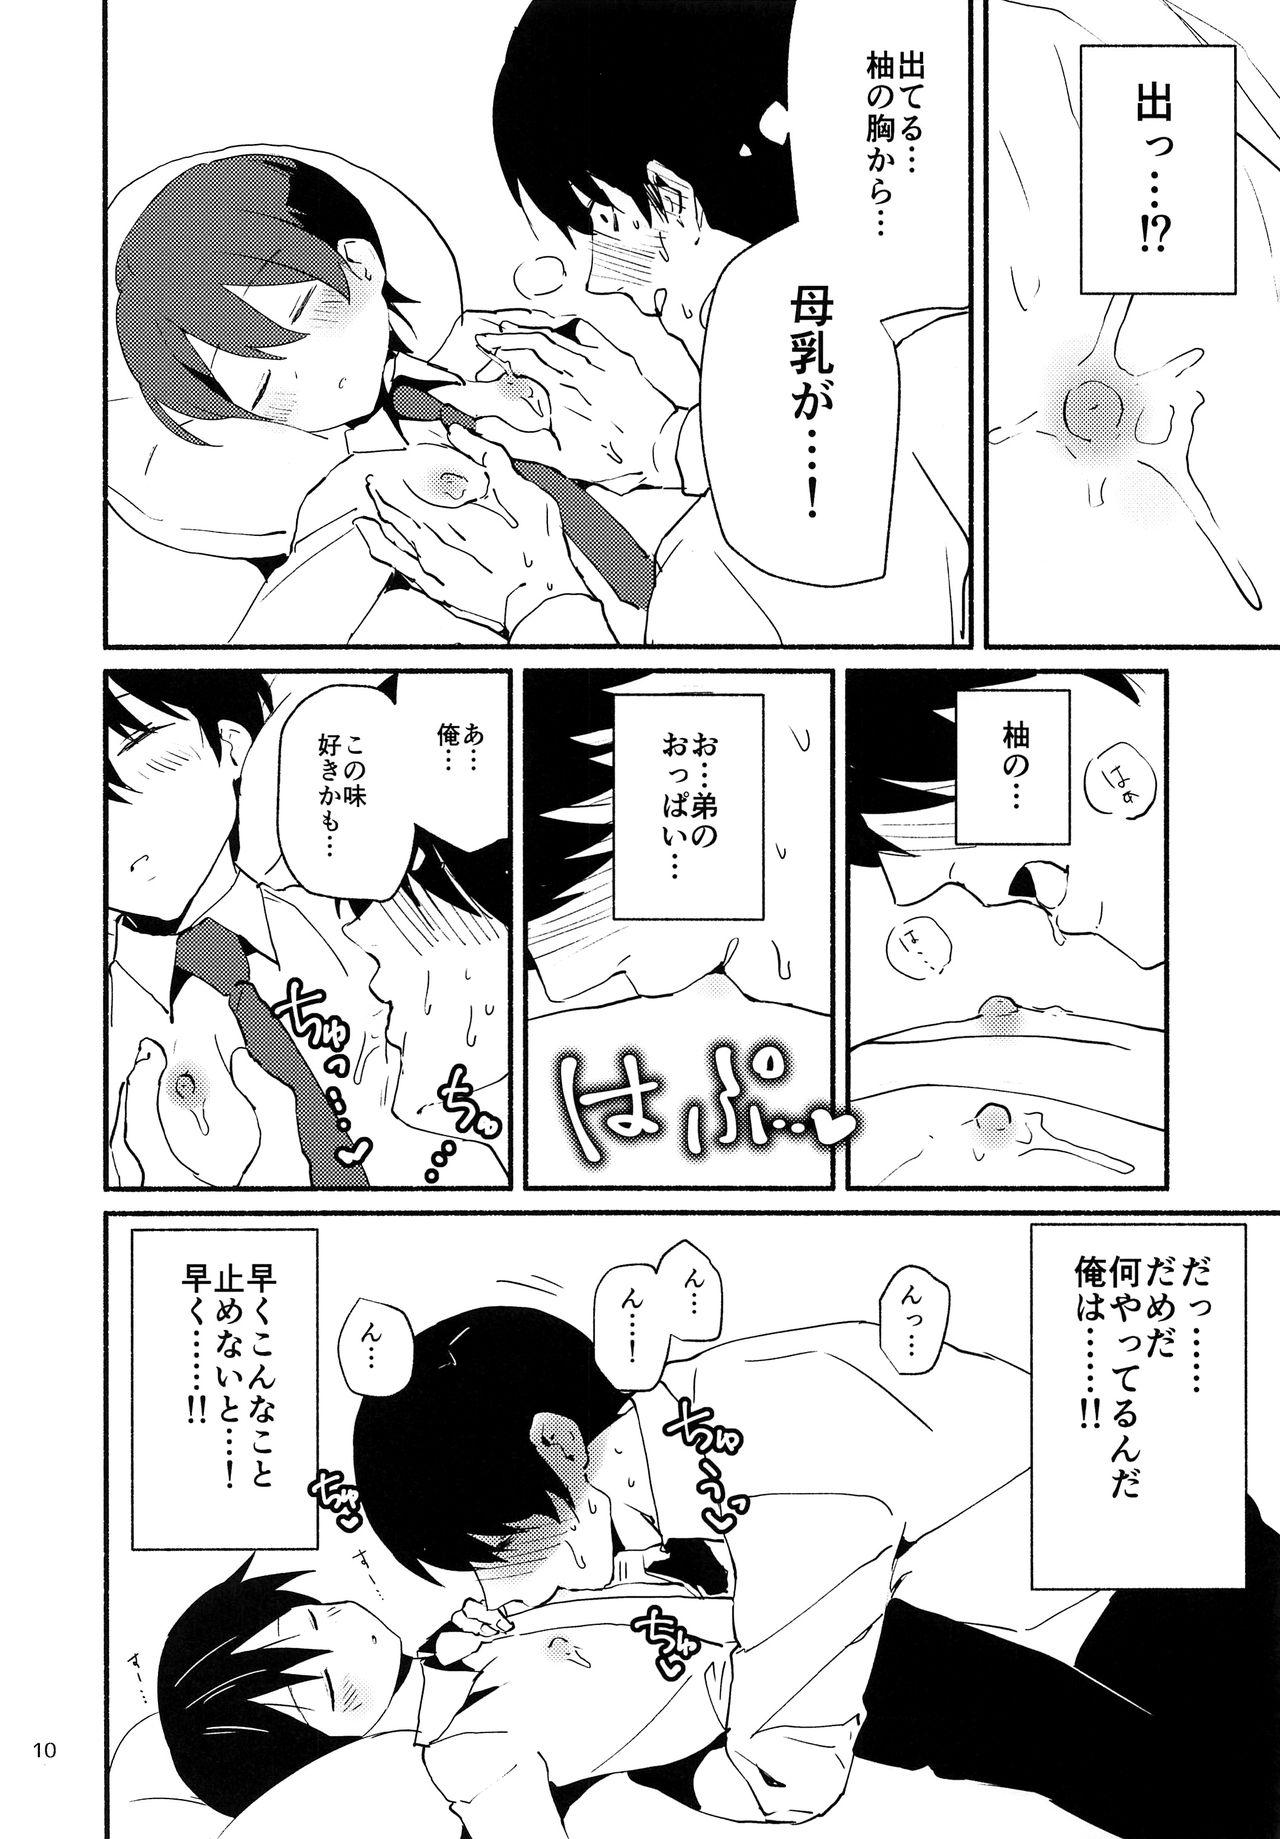 18 Year Old Ore wa Otouto o Sui Zukushi Tai Backshots - Page 9